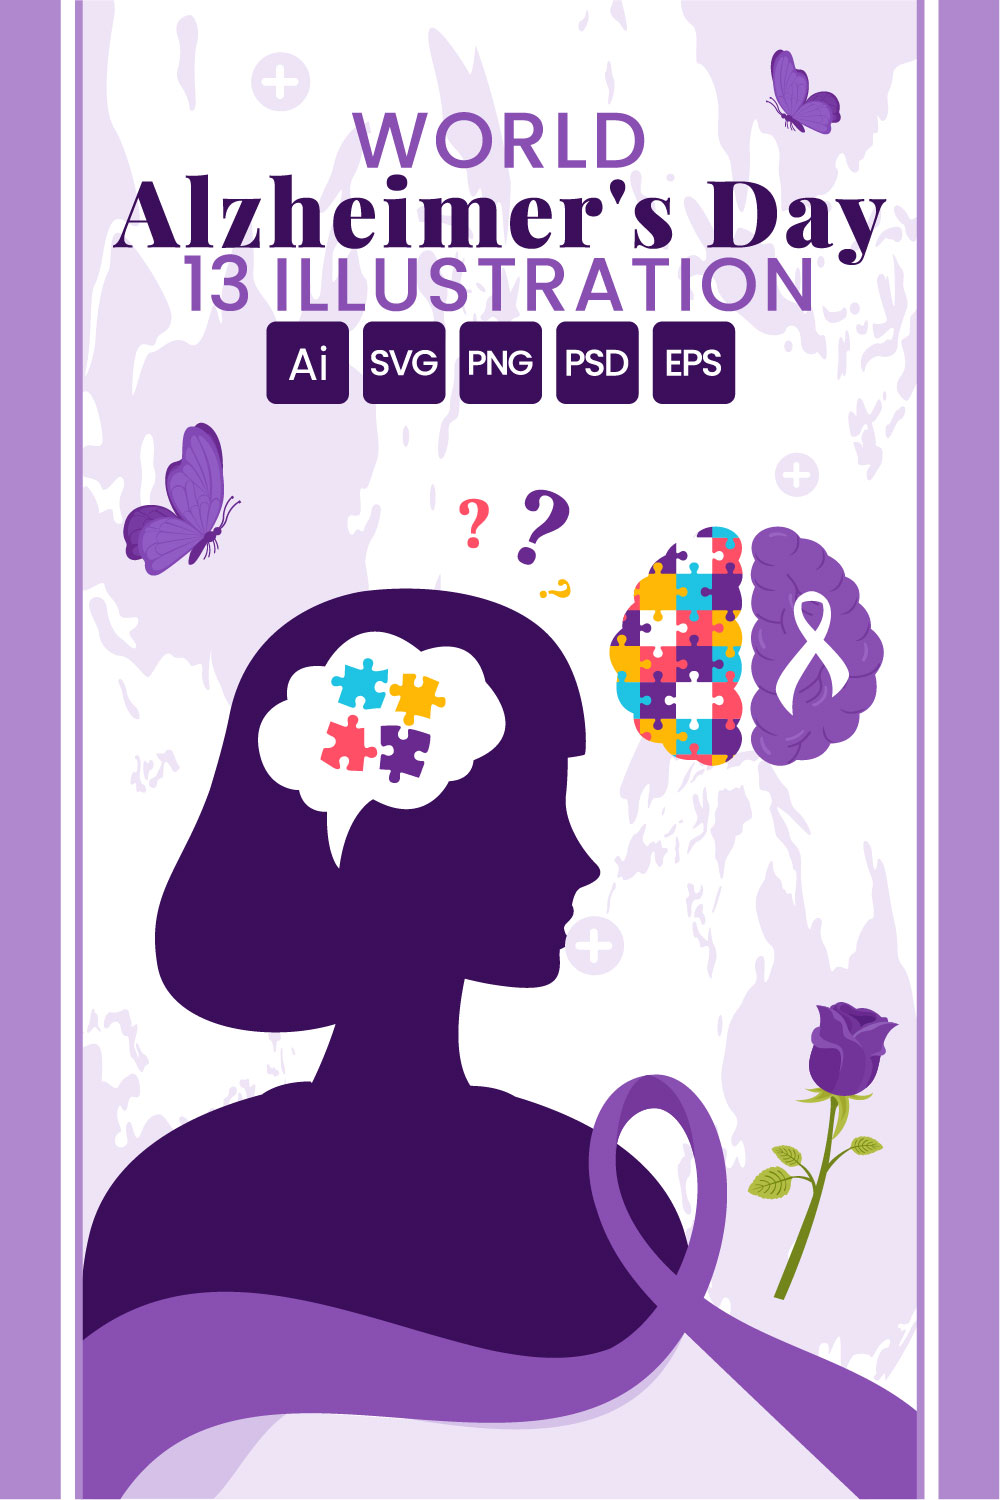 13 World Alzheimer's Day Illustration pinterest preview image.